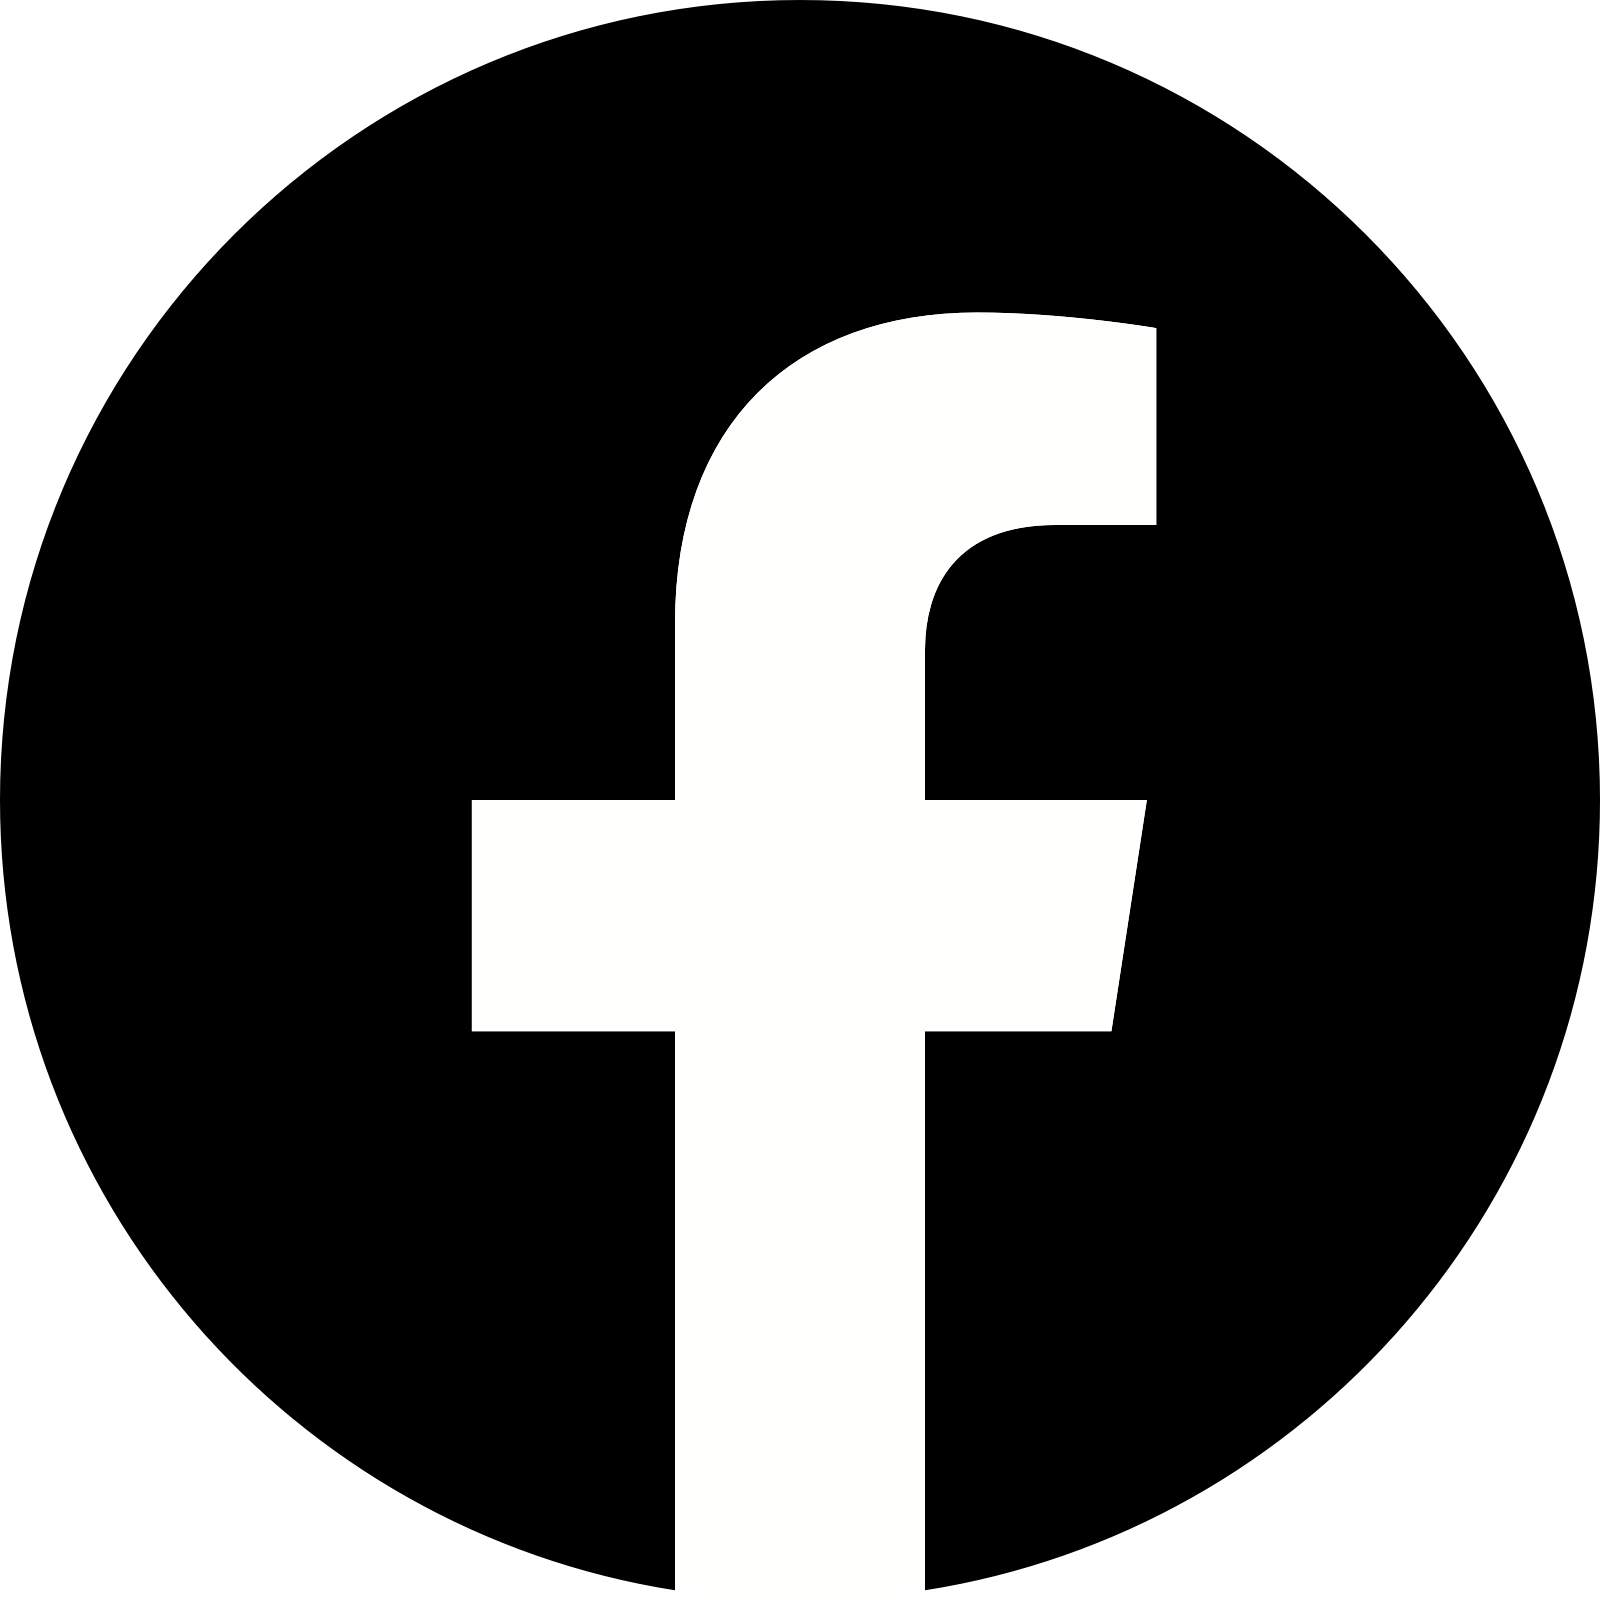 Imagens transparentes do logotipo do Facebook